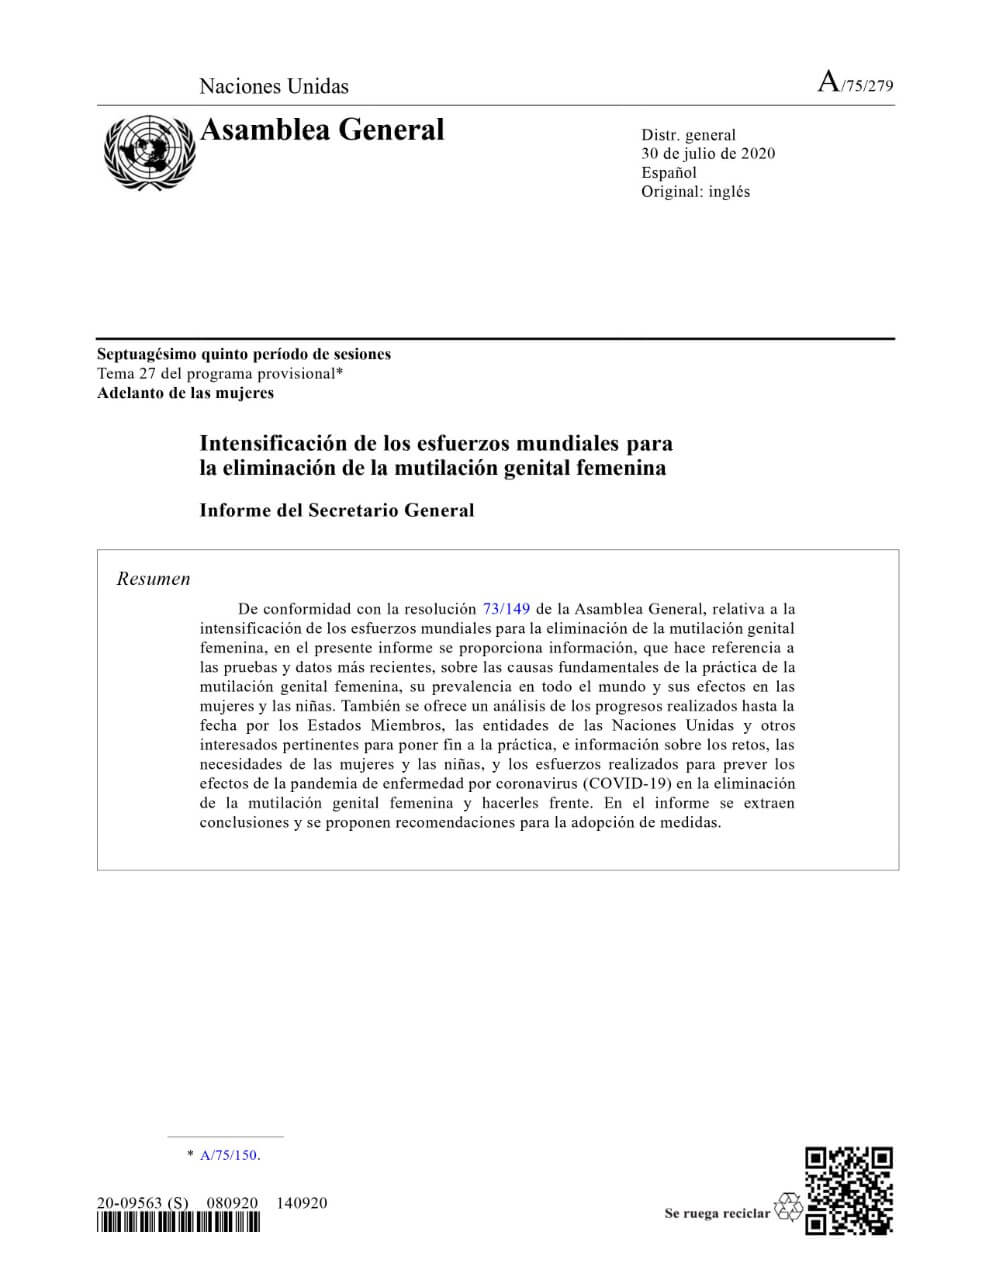 Intensificación de los esfuerzos mundiales para la eliminación de la mutilación genital femenina: Informe del Secretario General (2020)